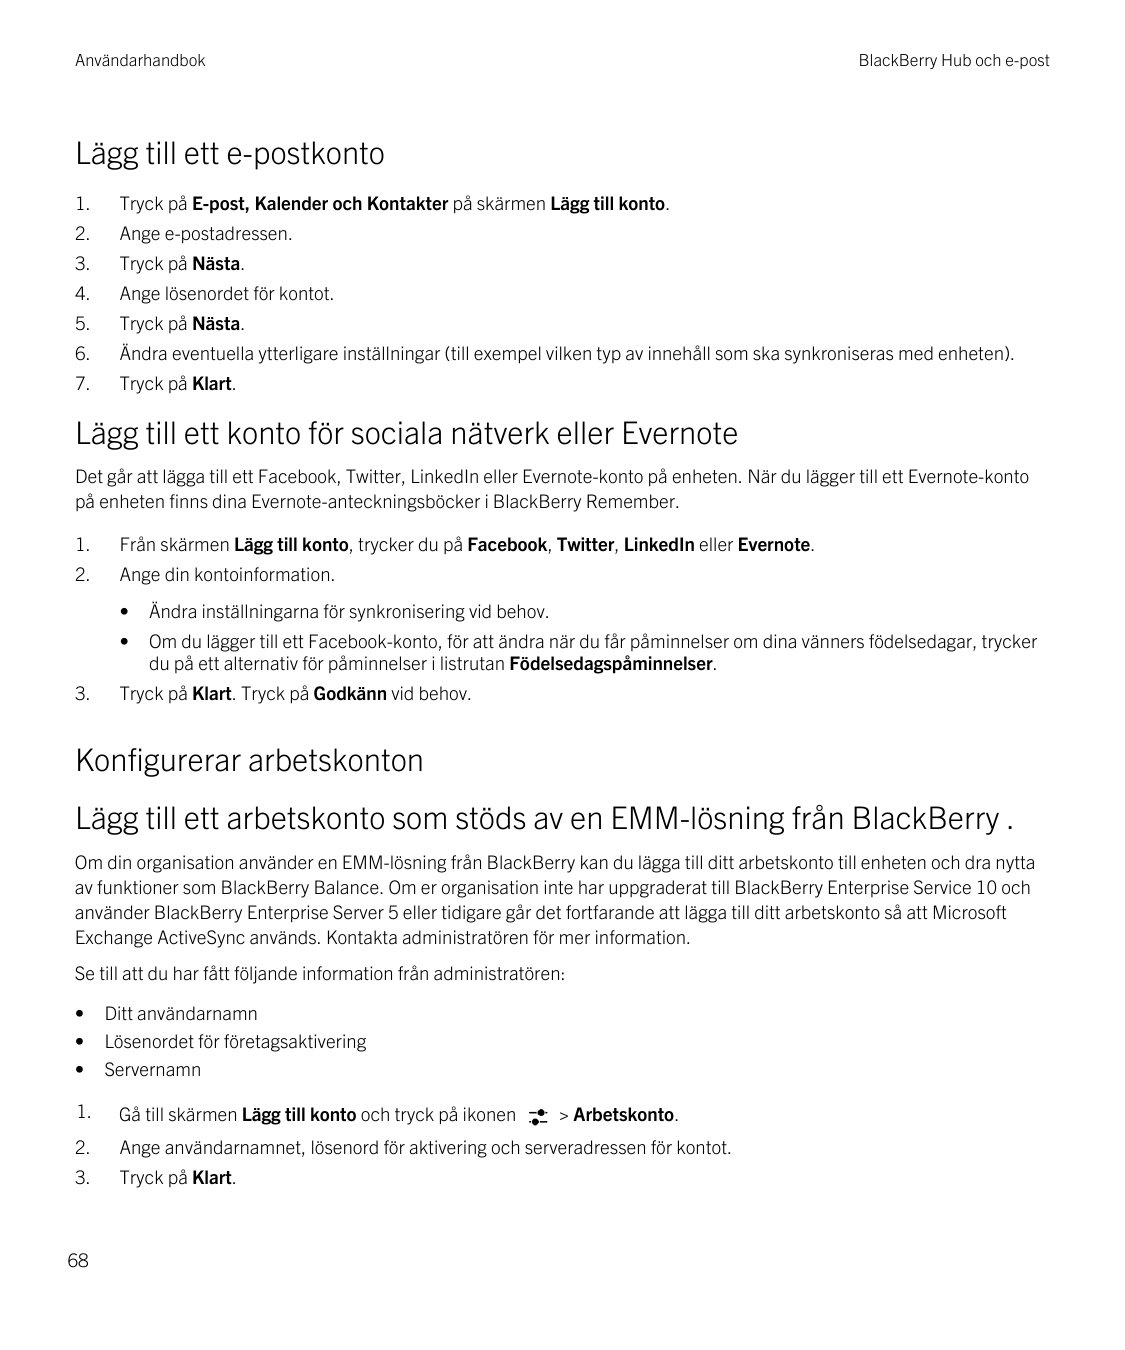 AnvändarhandbokBlackBerry Hub och e-postLägg till ett e-postkonto1.Tryck på E-post, Kalender och Kontakter på skärmen Lägg till 